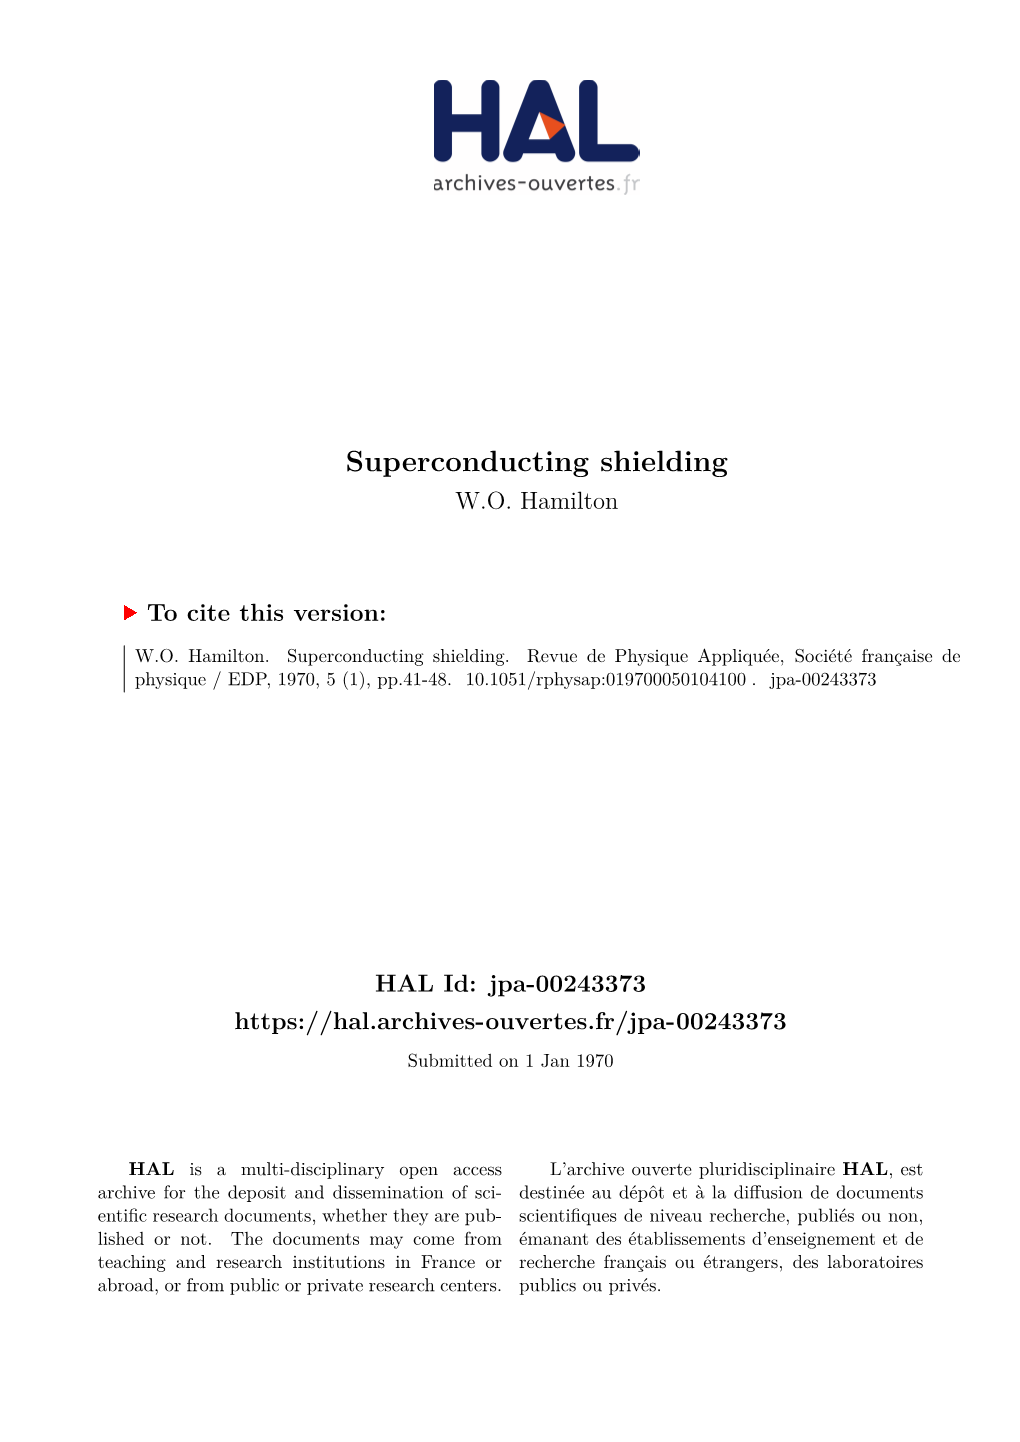 Superconducting Shielding W.O